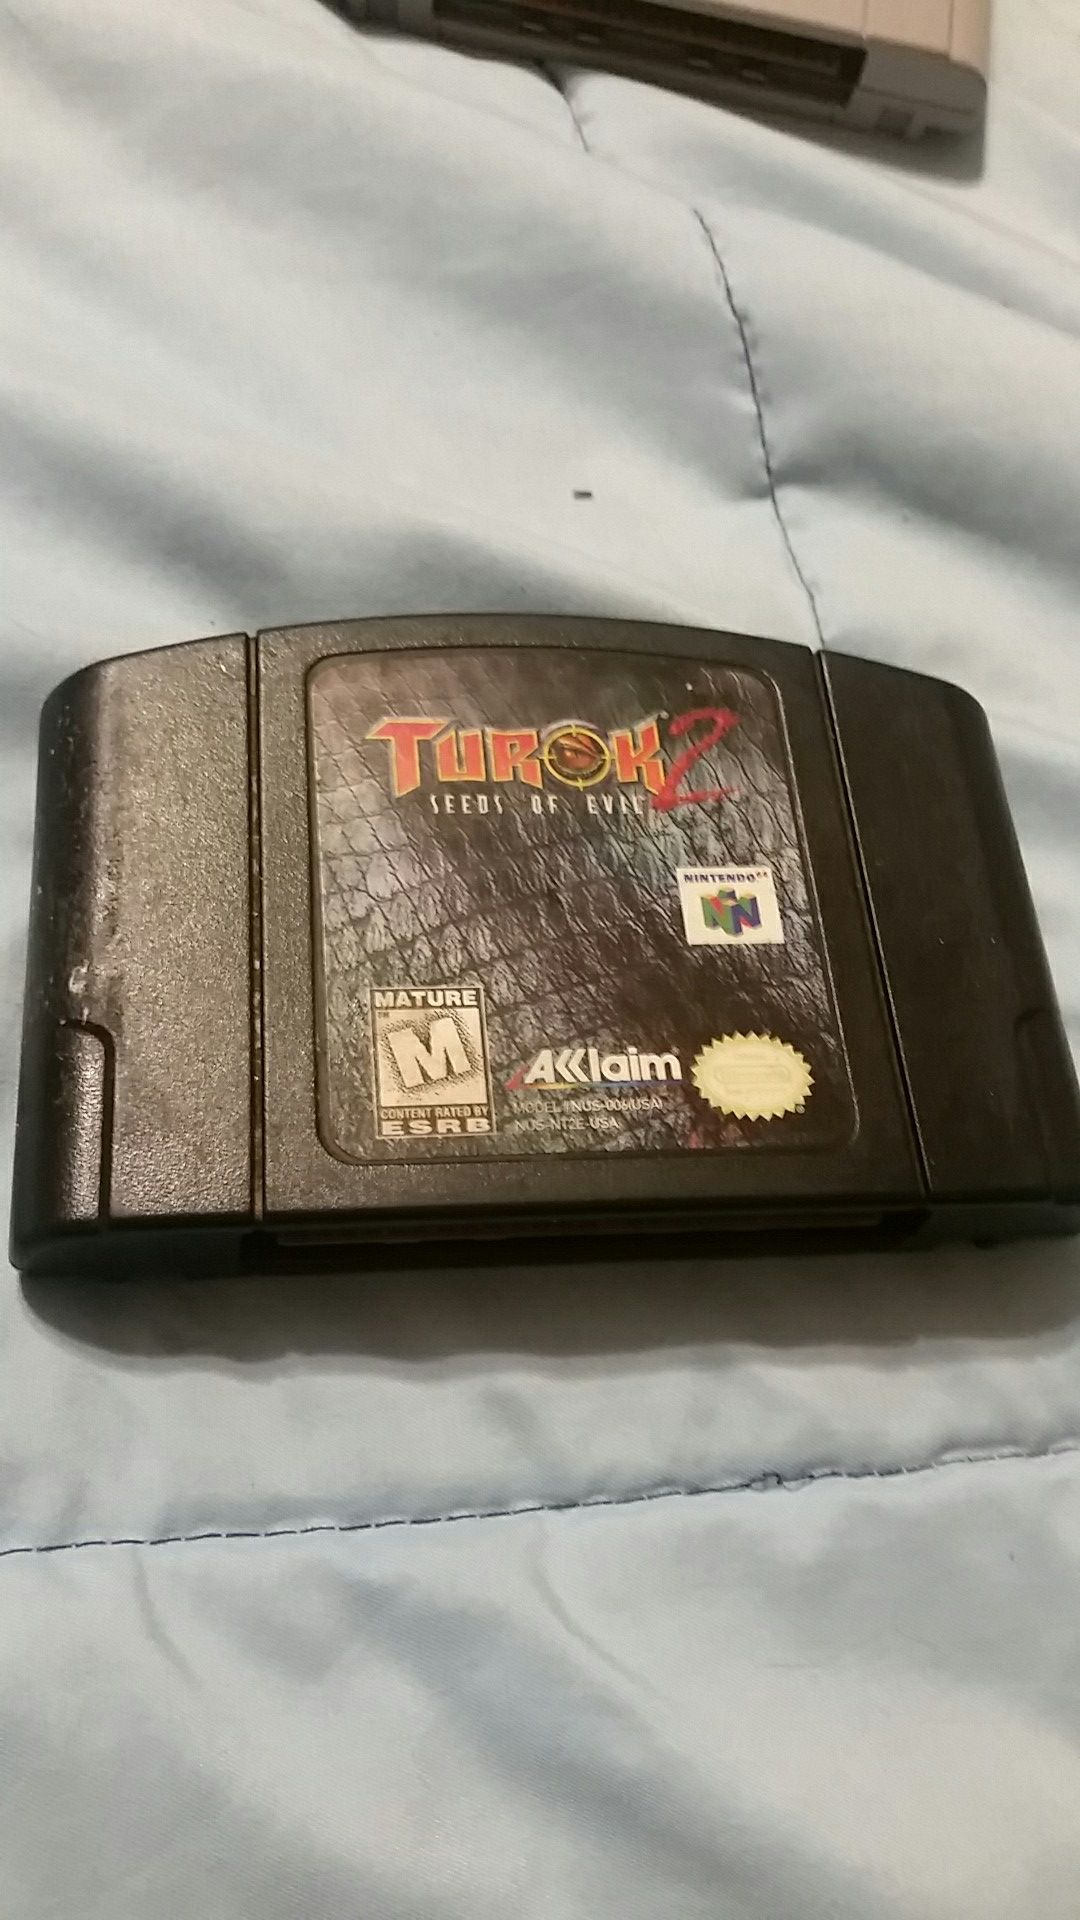 Turok 2 - Seeds of Evil for Nintendo 64